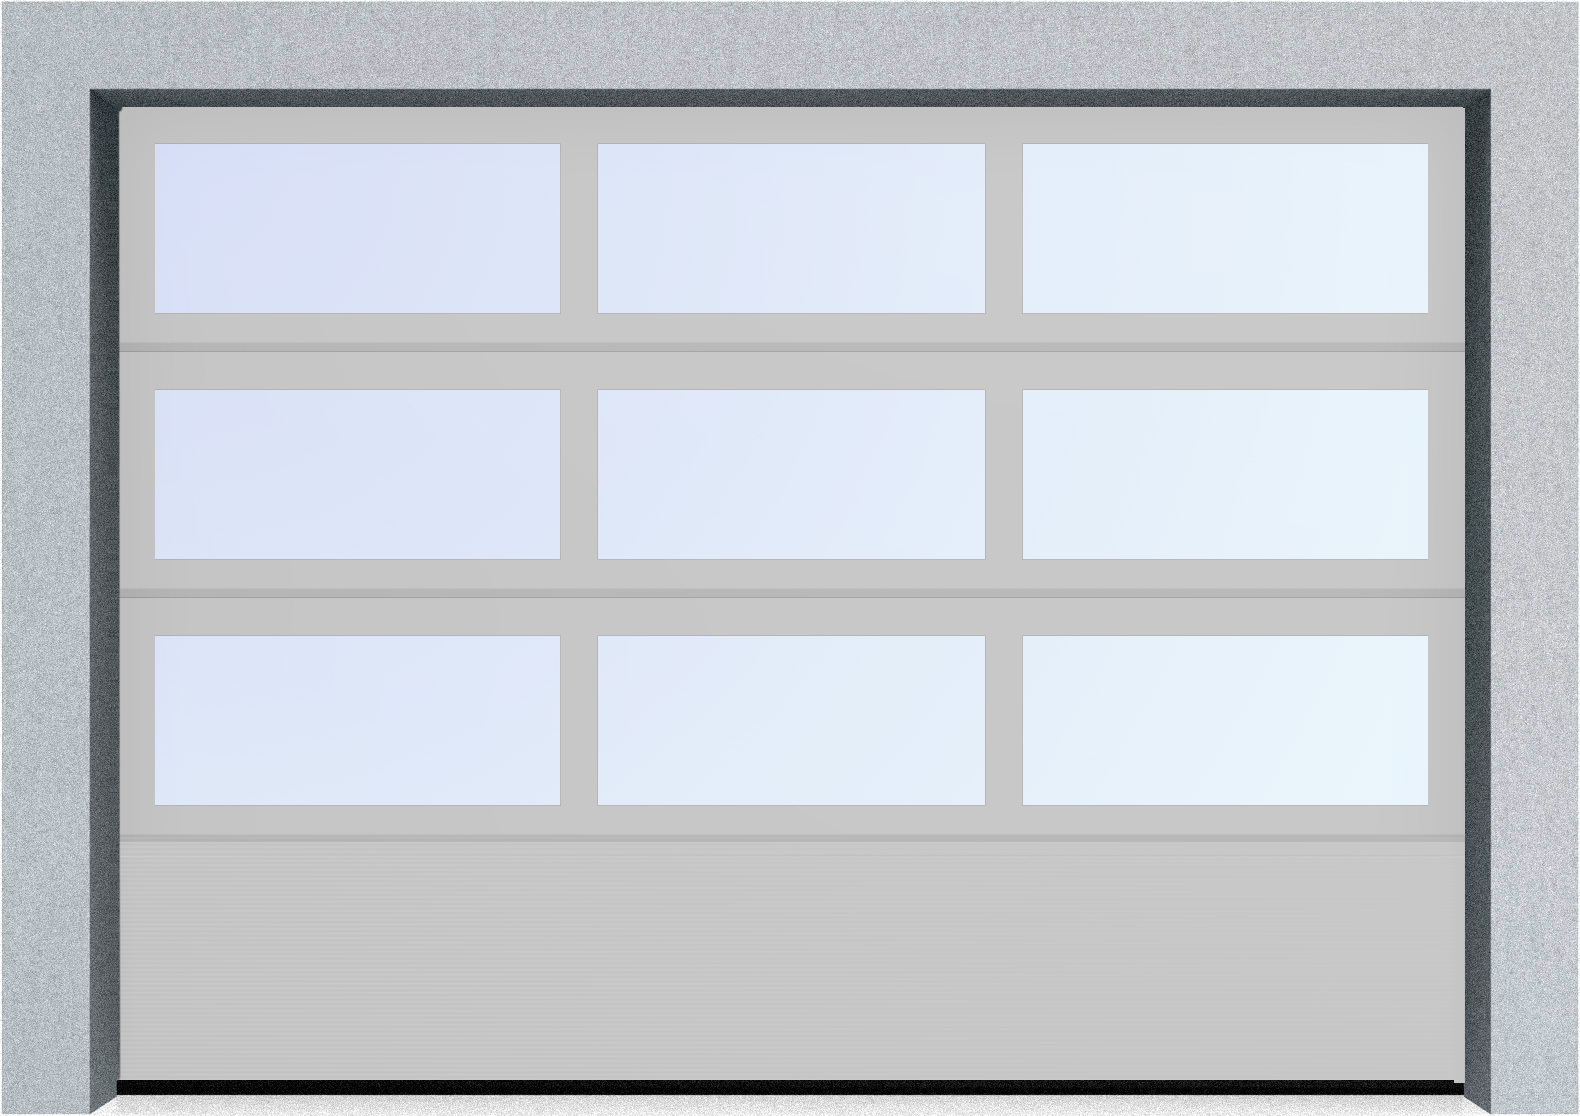  Автоматические секционные панорамные ворота серии AluTrend с комбинированным типом полотна (АЛПС) 3000х4500 S-гофр, Микроволна стандартные цвета, фото 15 